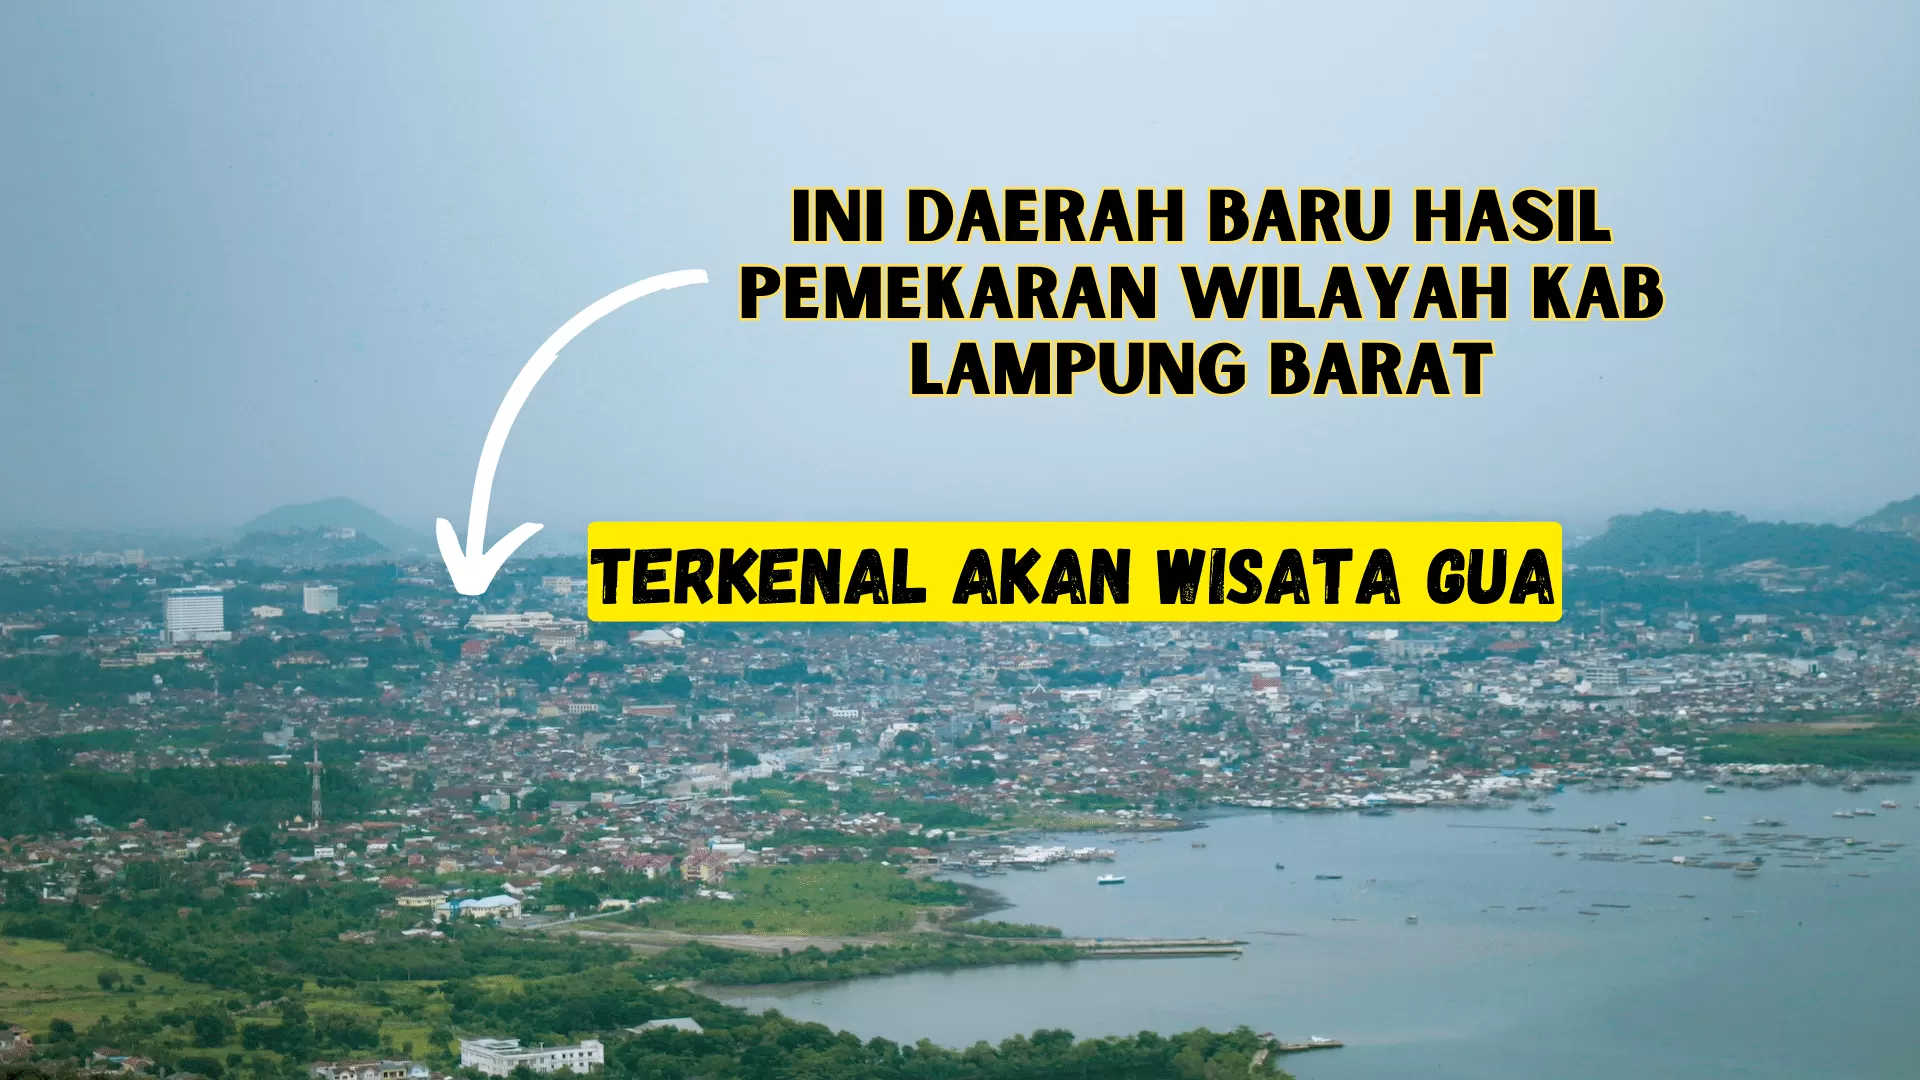 Baru Berdiri 2012, Daerah Ini Hasil Pemekaran Wilayah Kabupaten Lampung Barat, 6 Jam dari Bandar Lampung